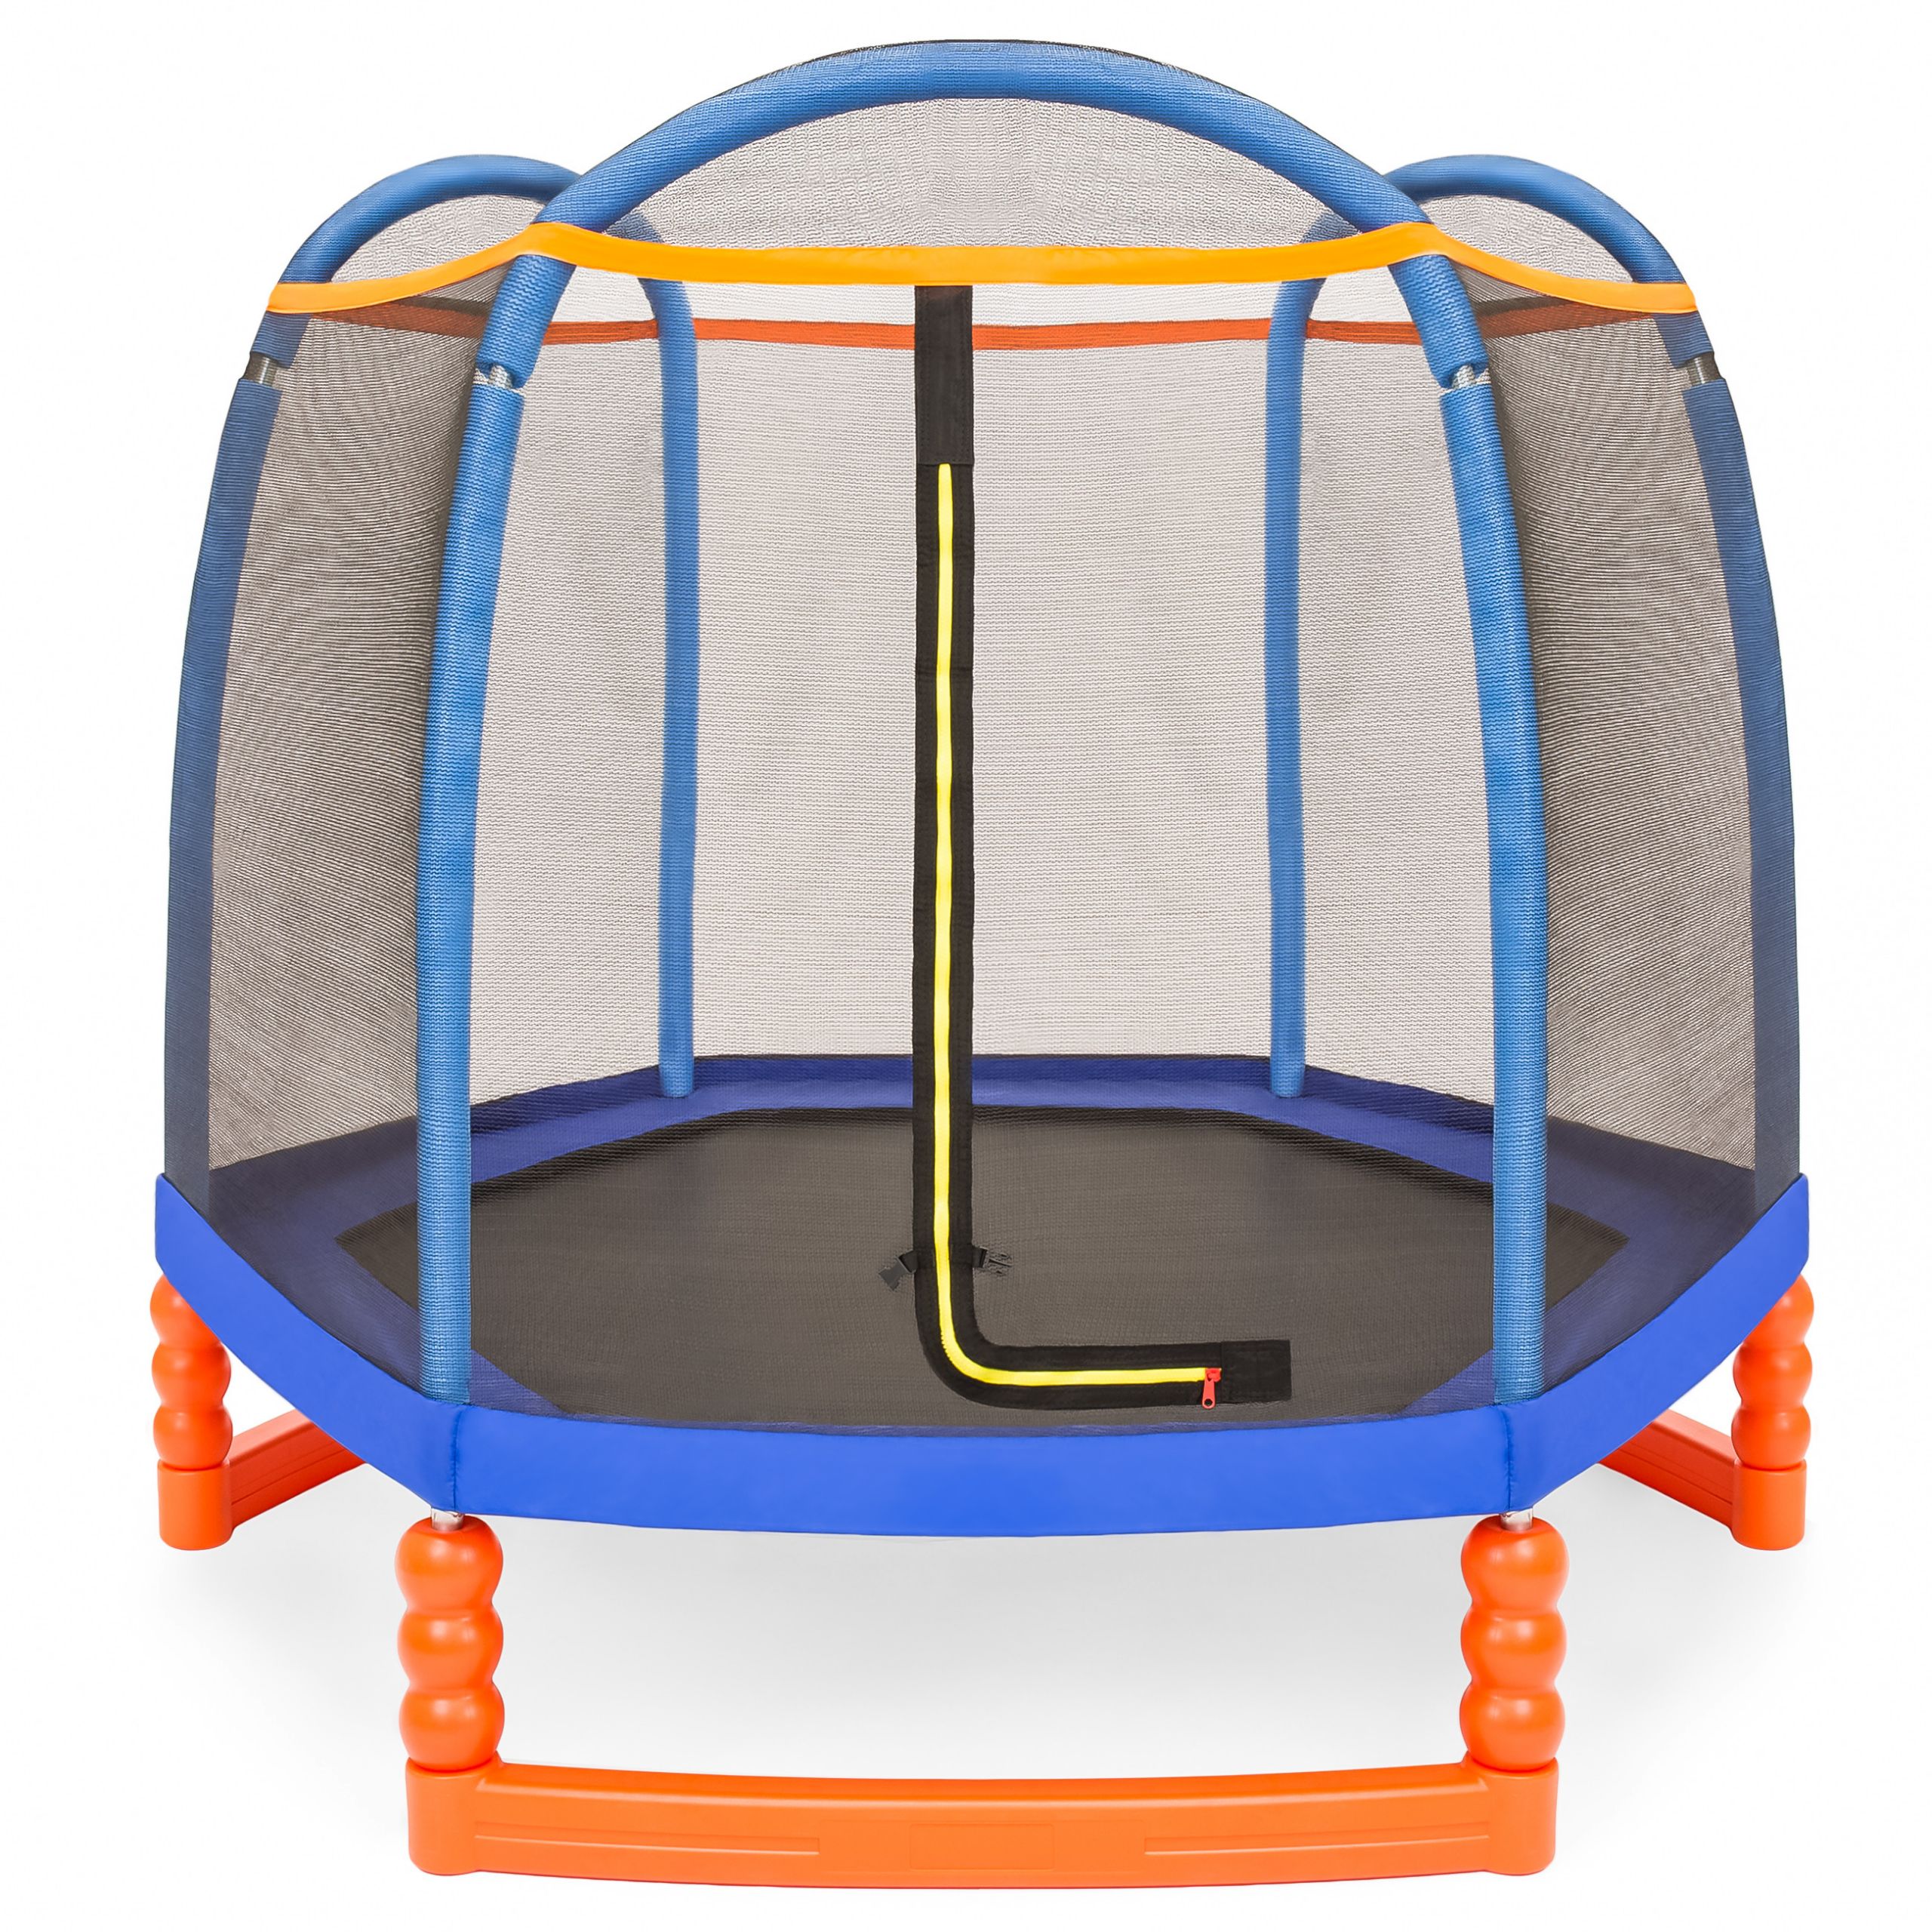 Indoor Trampoline For Kids
 BCP 7ft Kids Indoor Outdoor Mini Trampoline w Safety Net